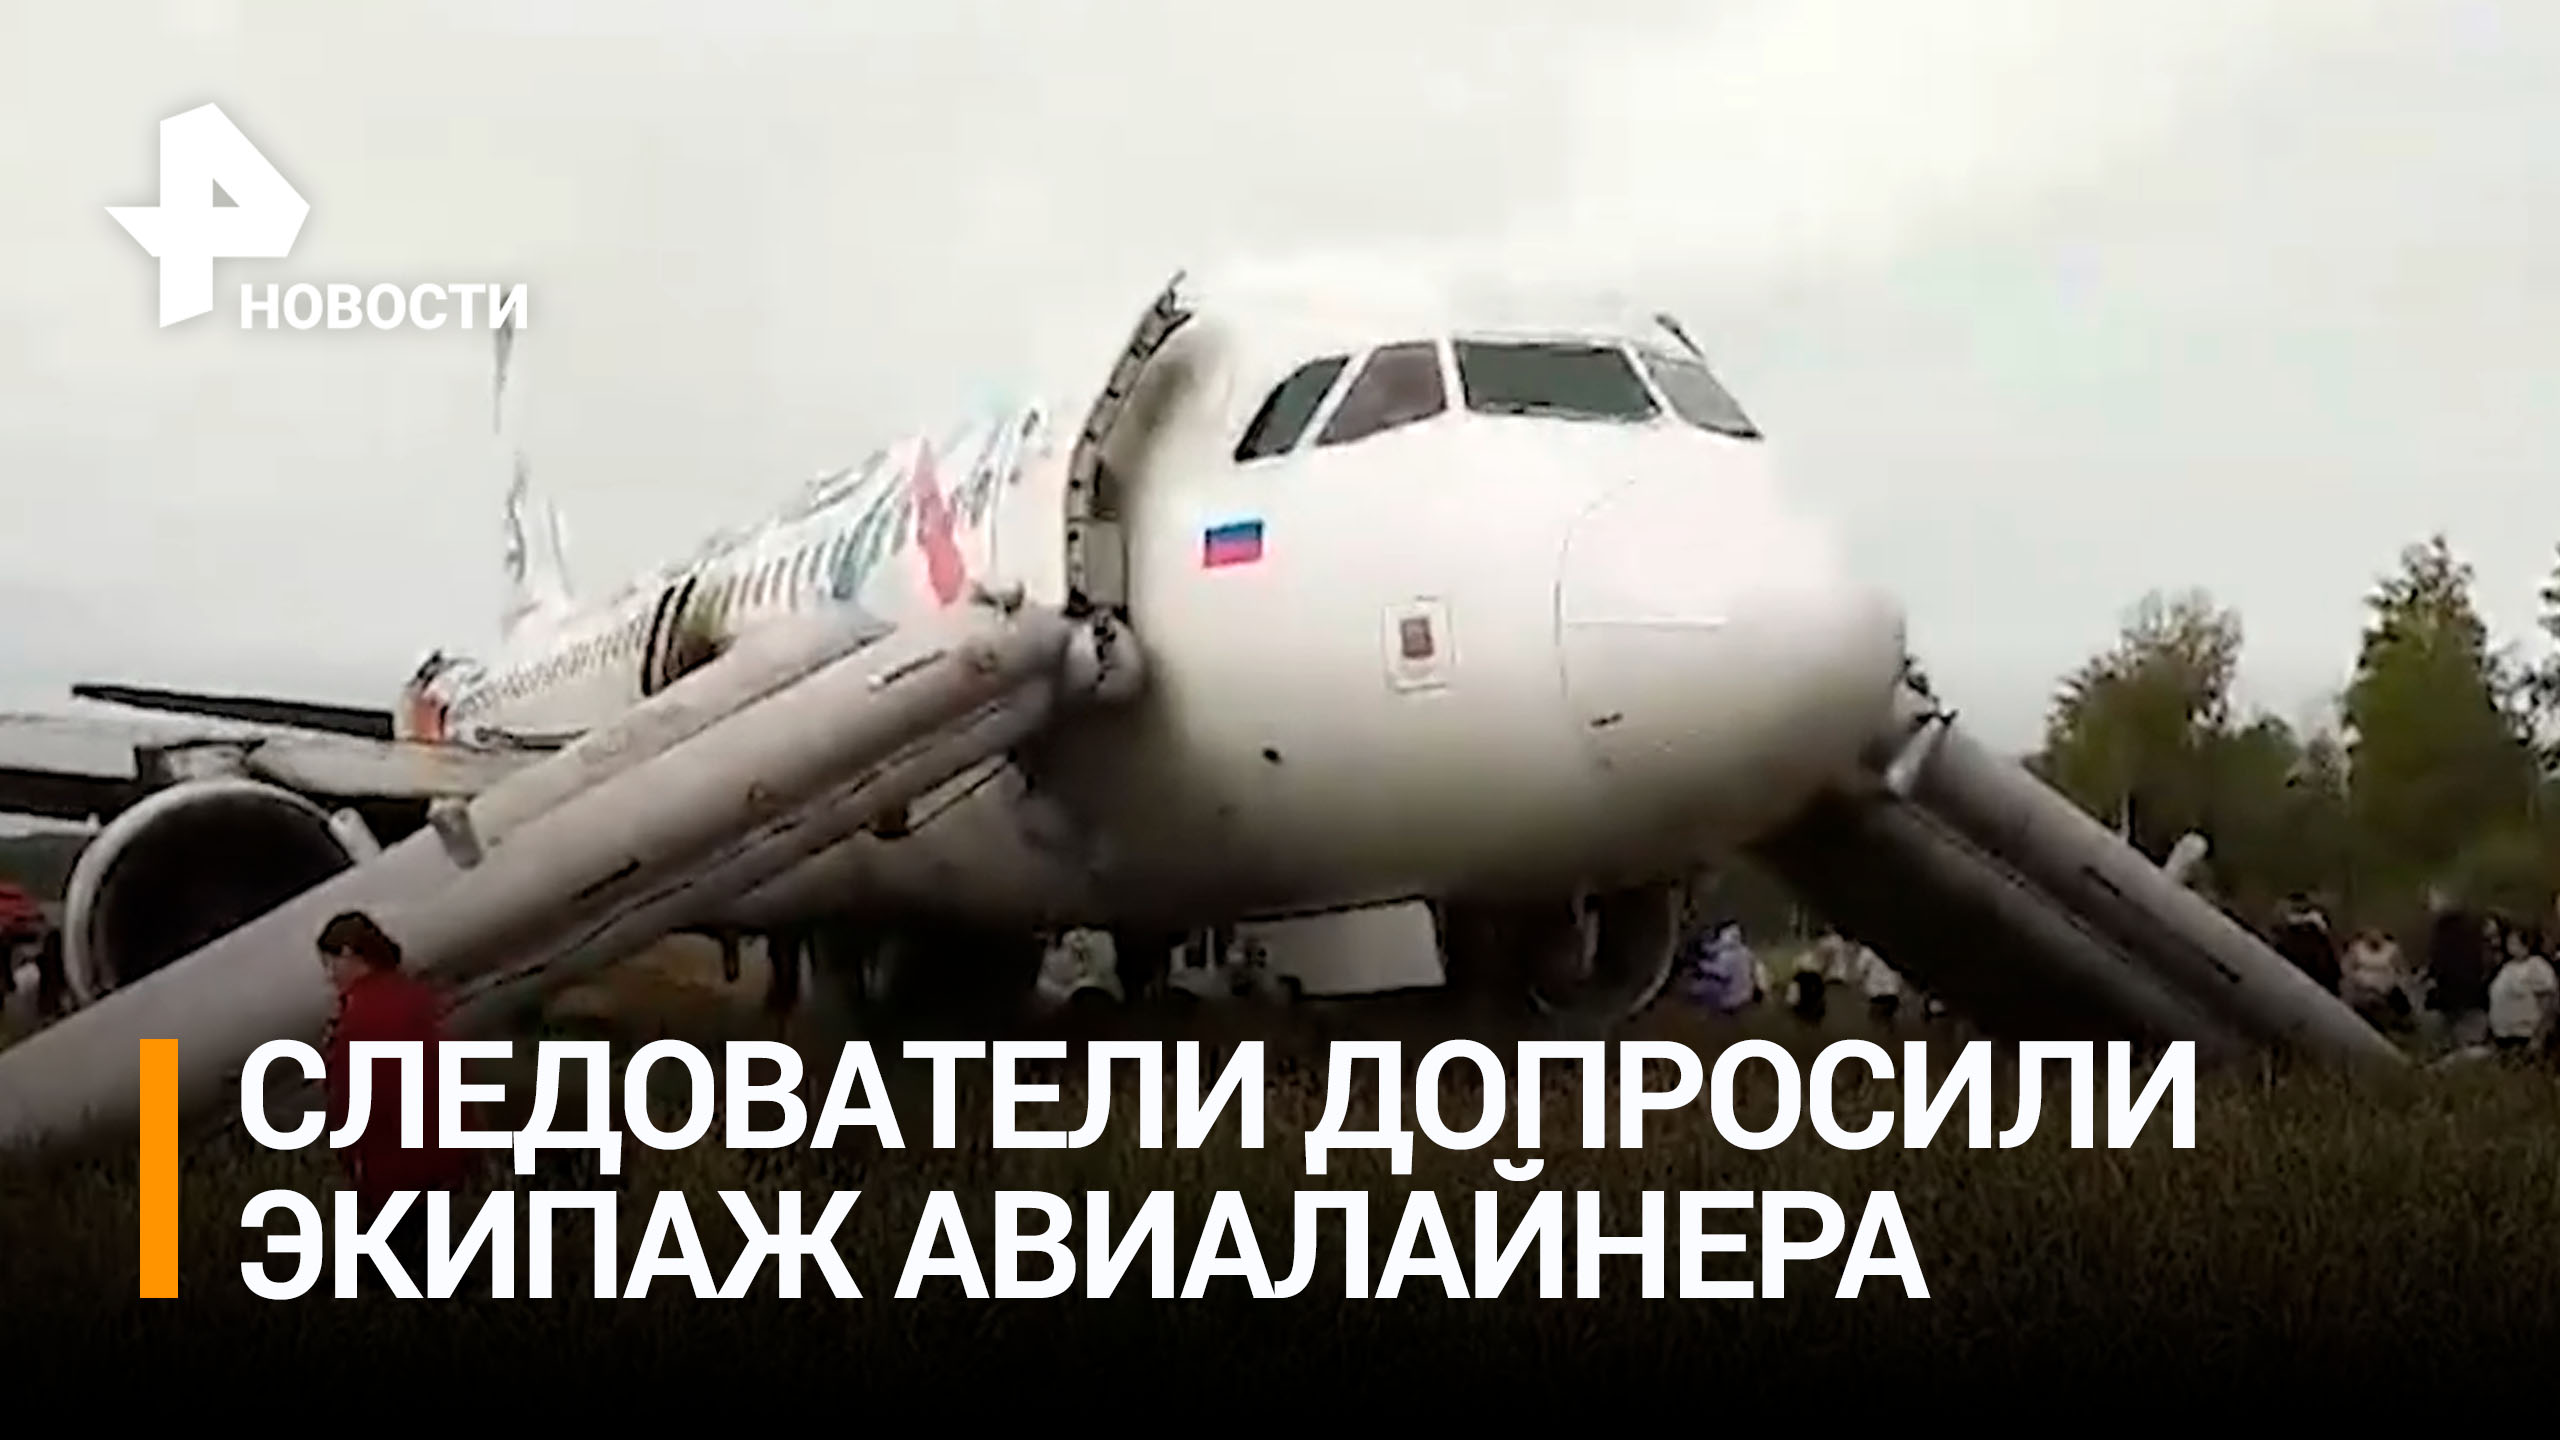 Следователи допросили экипаж аварийно севшего под Новосибирском самолета / РЕН Новости